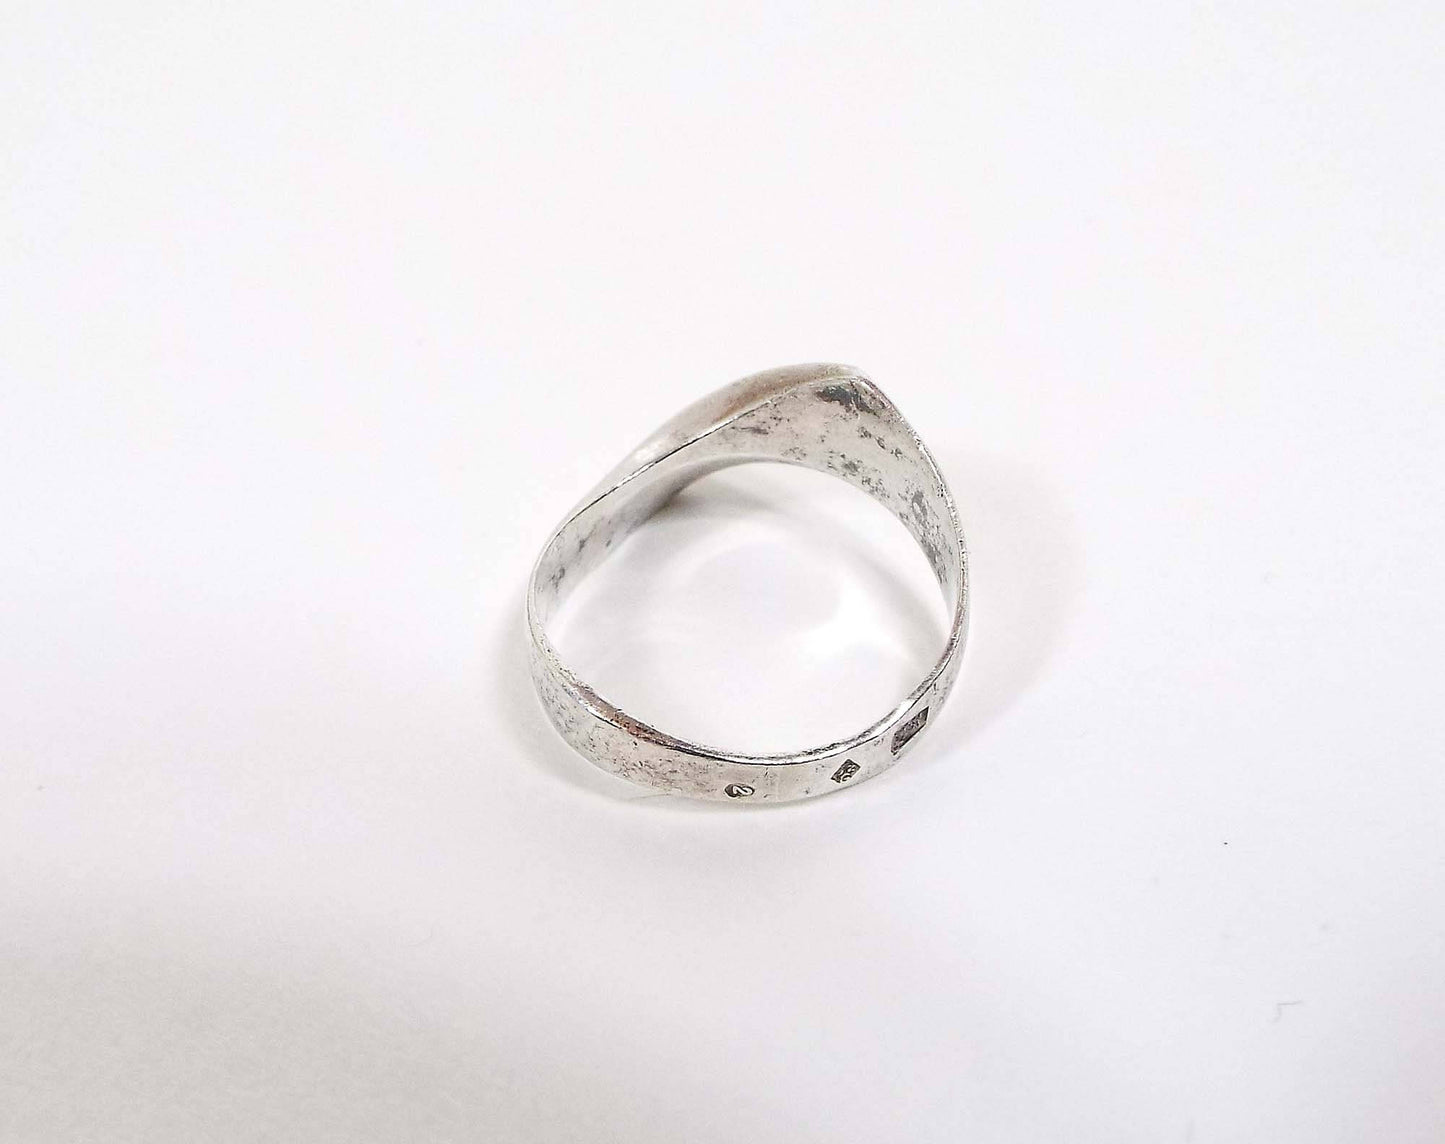 Polish Modernist Angled Vintage Sterling Silver Ring